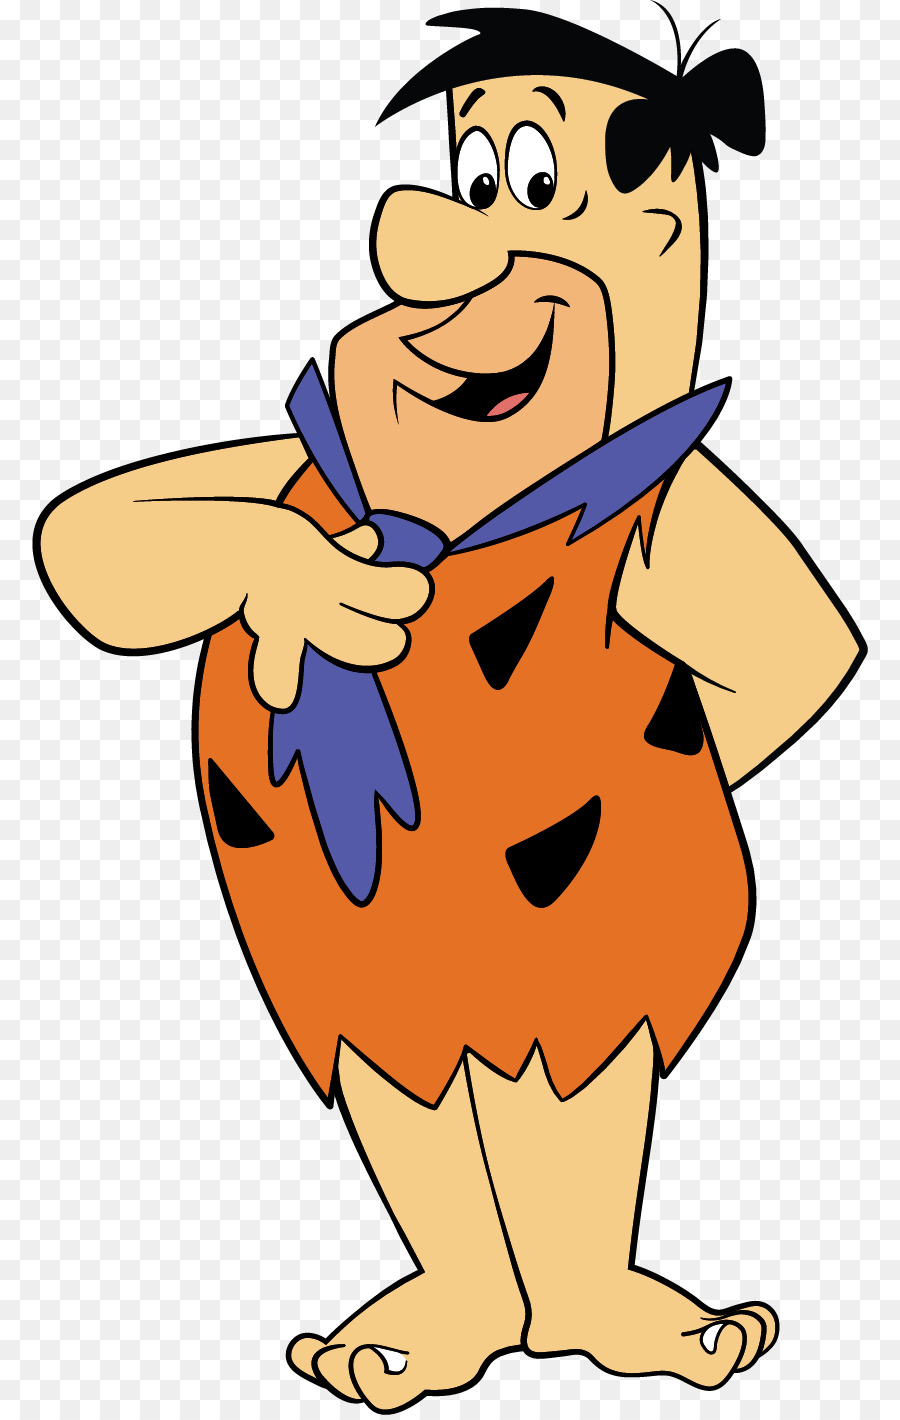 Fred Flintstone Wilma Flintstone Barney Rubble Betty Rubble Character - others png download - 836*1415 - Free Transparent Fred Flintstone png Download.